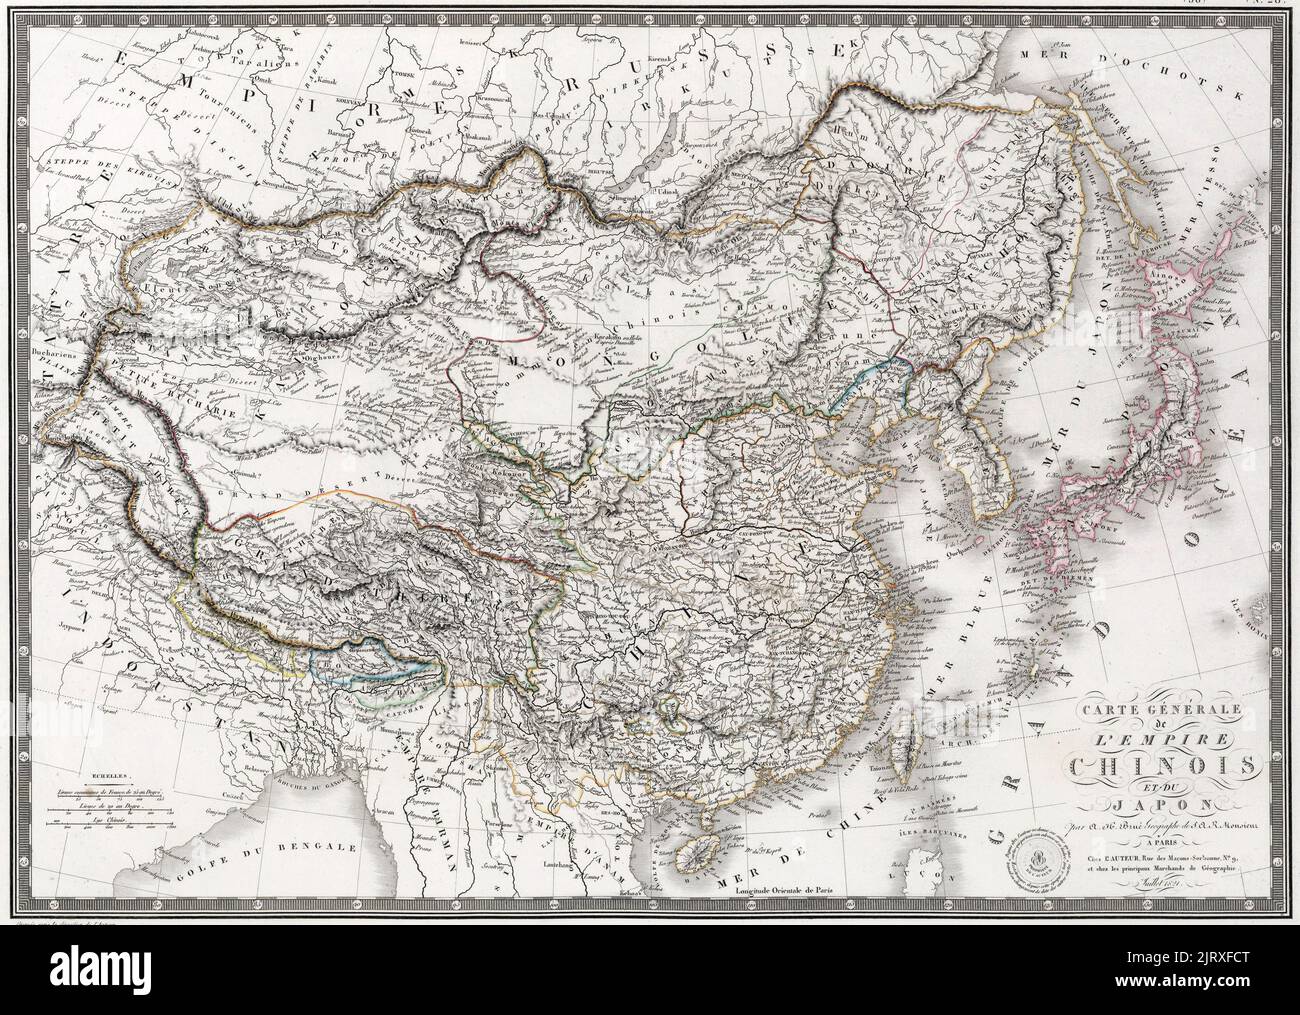 Allgemeine Karte des chinesischen Reiches und Japans': Eine Karte des Qing-Reiches und Japans, veröffentlicht von J. Andrieveau-Goujon in Paris. Beachten Sie den unteren Verlauf des Gelben Flusses vor den Überschwemmungen von 1850s, um 1821 Stockfoto